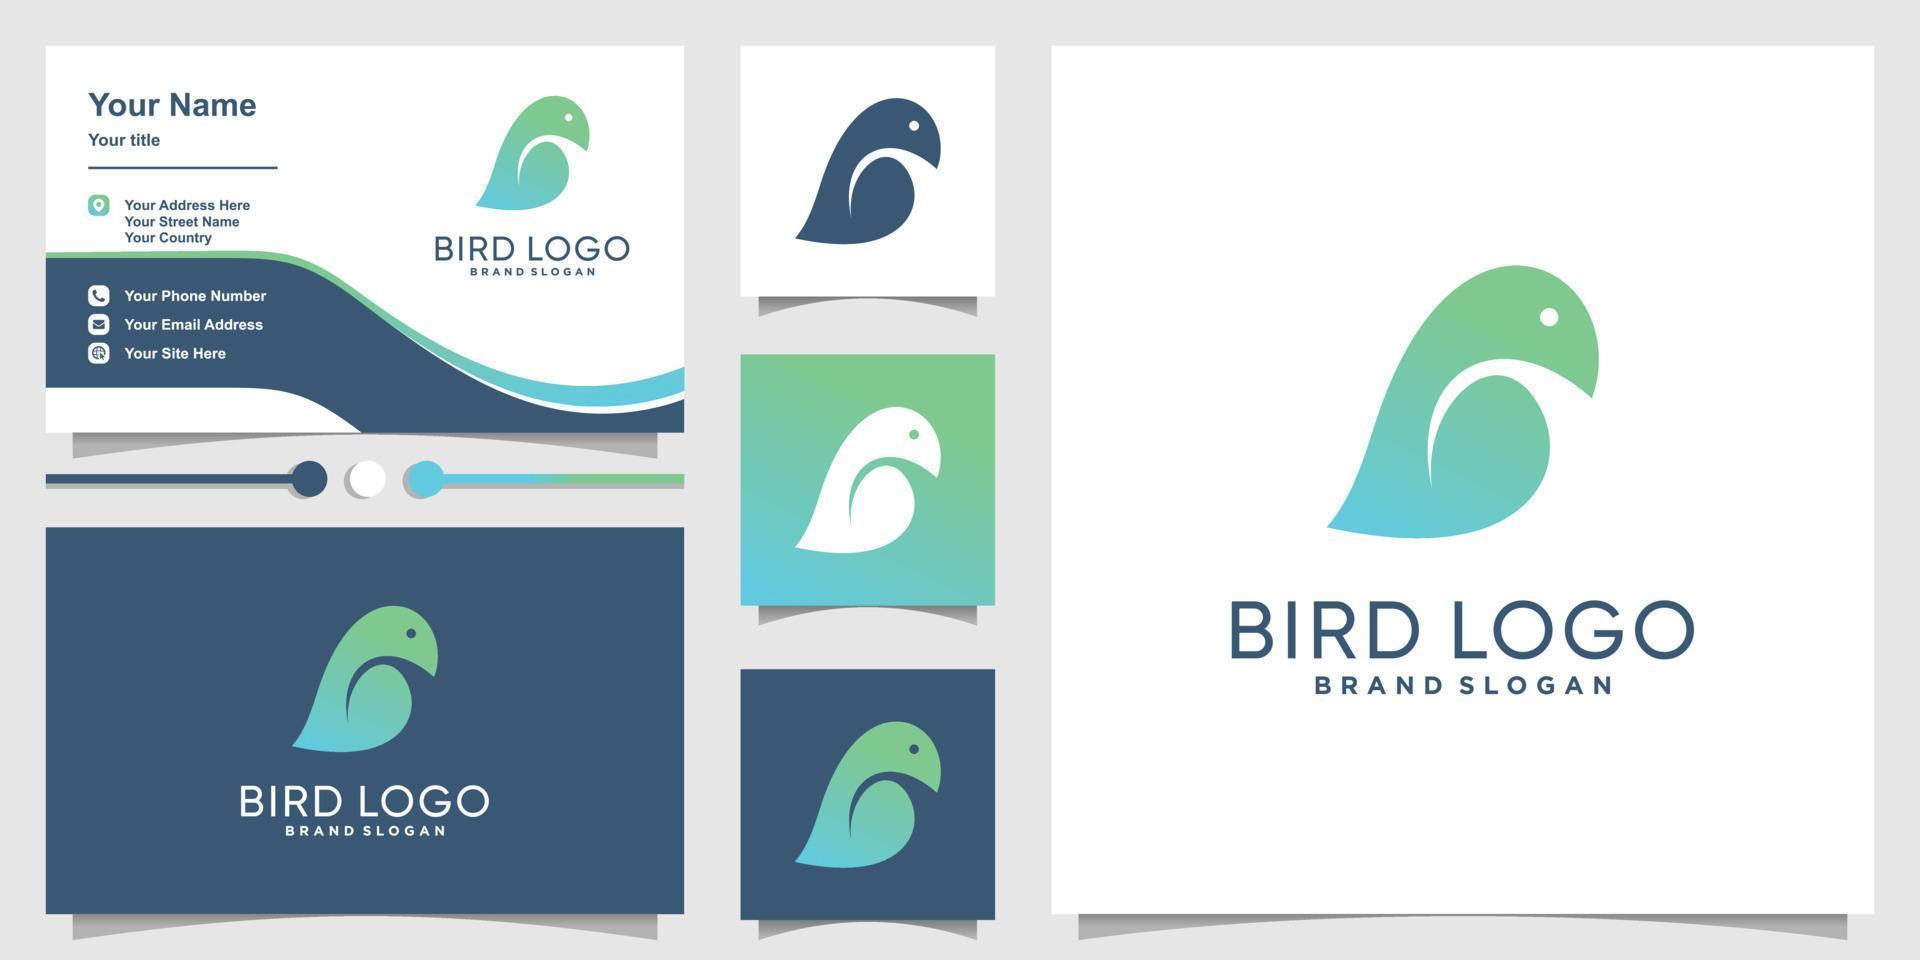 Bird logo design with creative concept Premium Vector